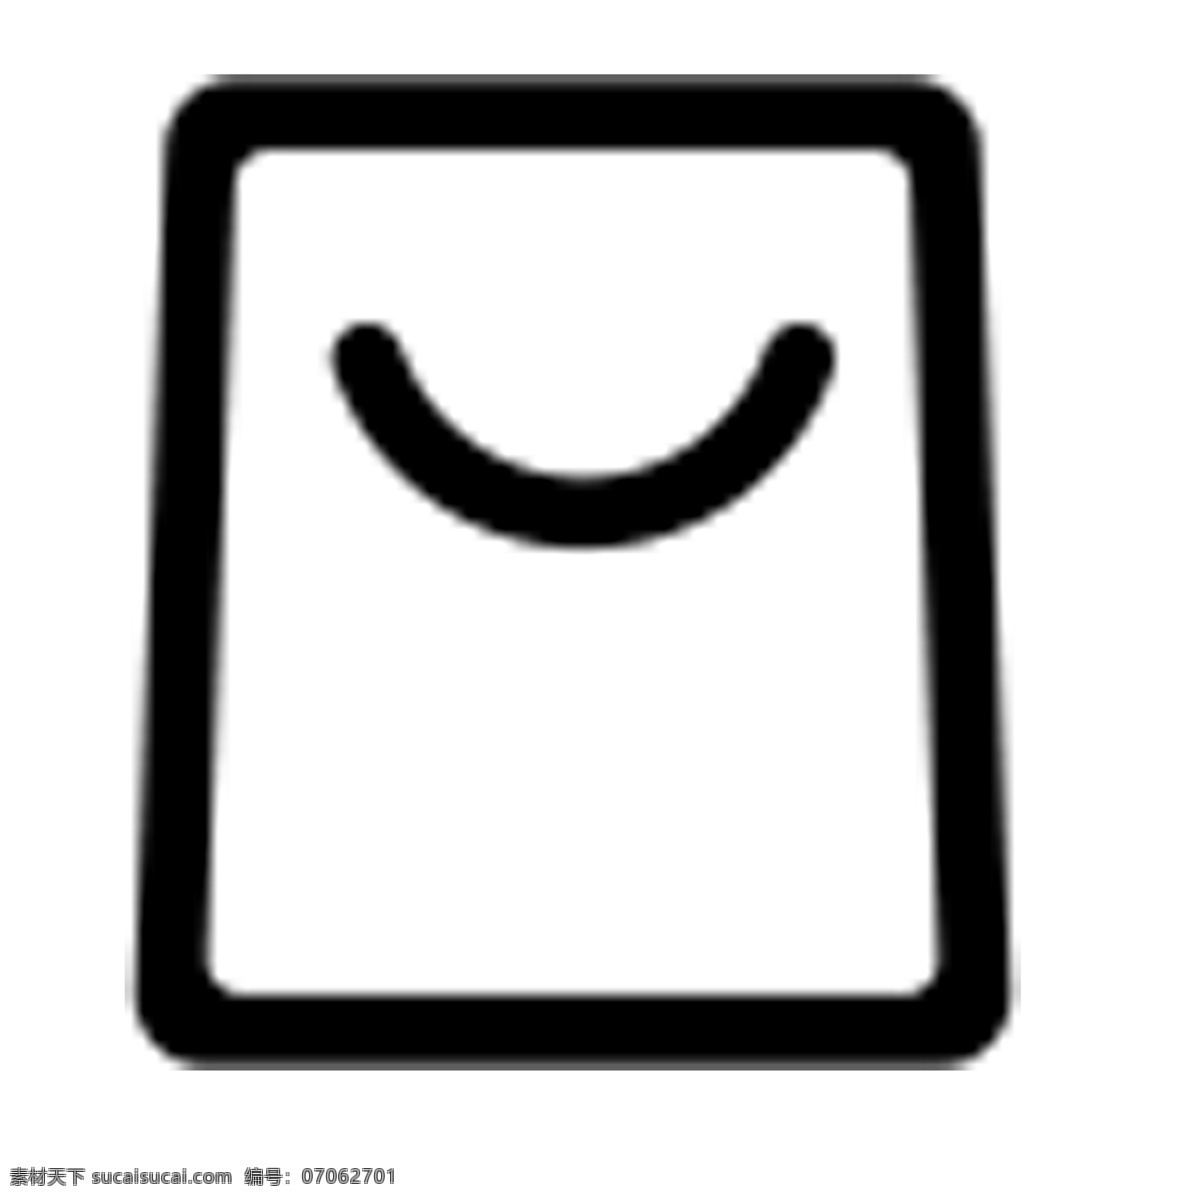 卡通 购物袋 图标 袋子 卡通袋子 手机图标 电子图标 图标设计 网页图标设计